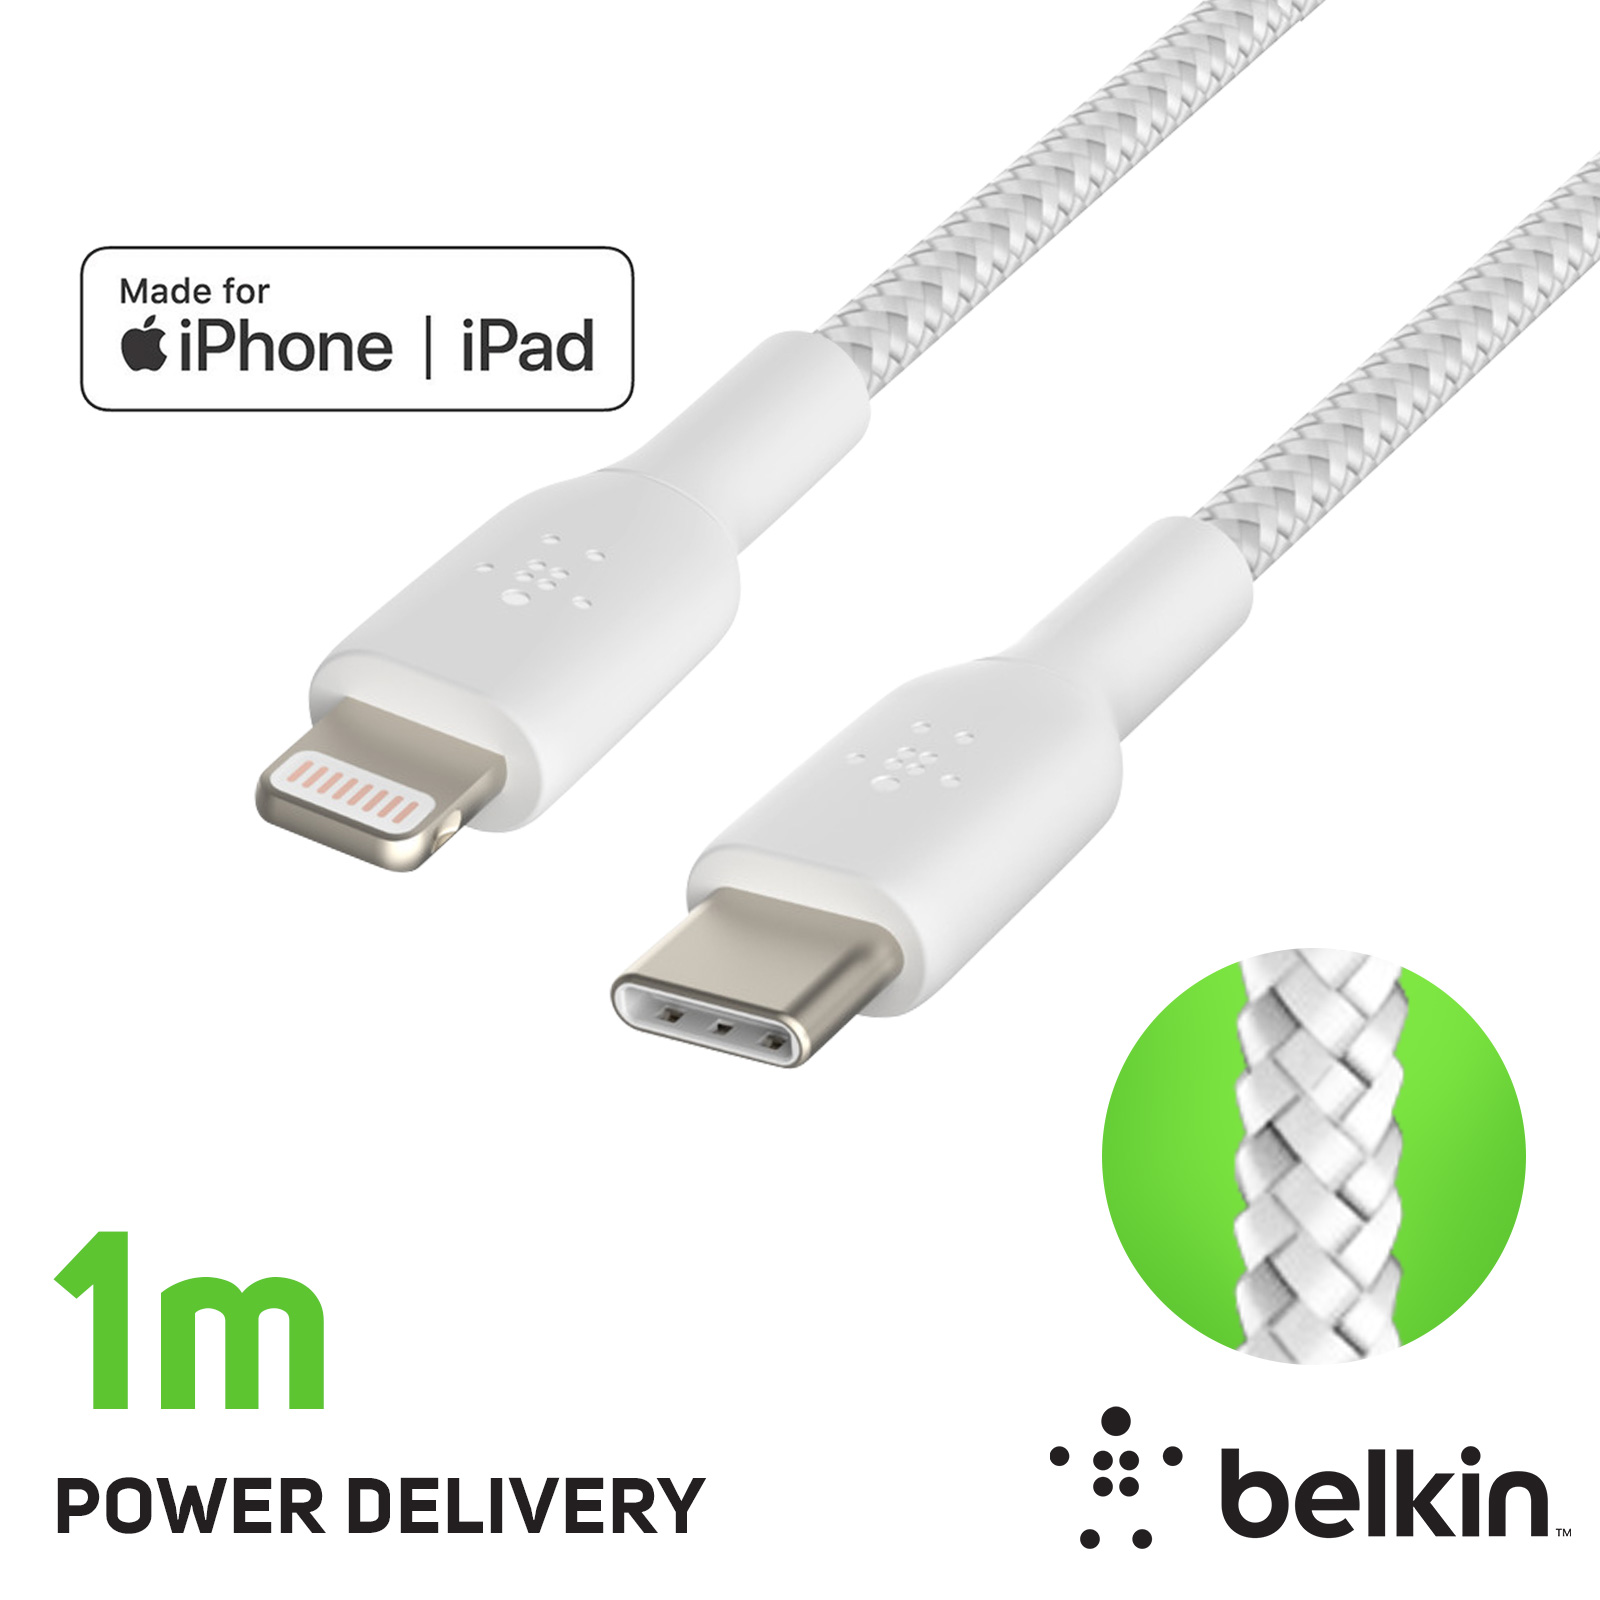 Câble USB-C vers iPhone / iPad Lightning MFi, Tressé en Nylon, série BOOST↑ CHARGE par Belkin, 1m - Blanc - Français